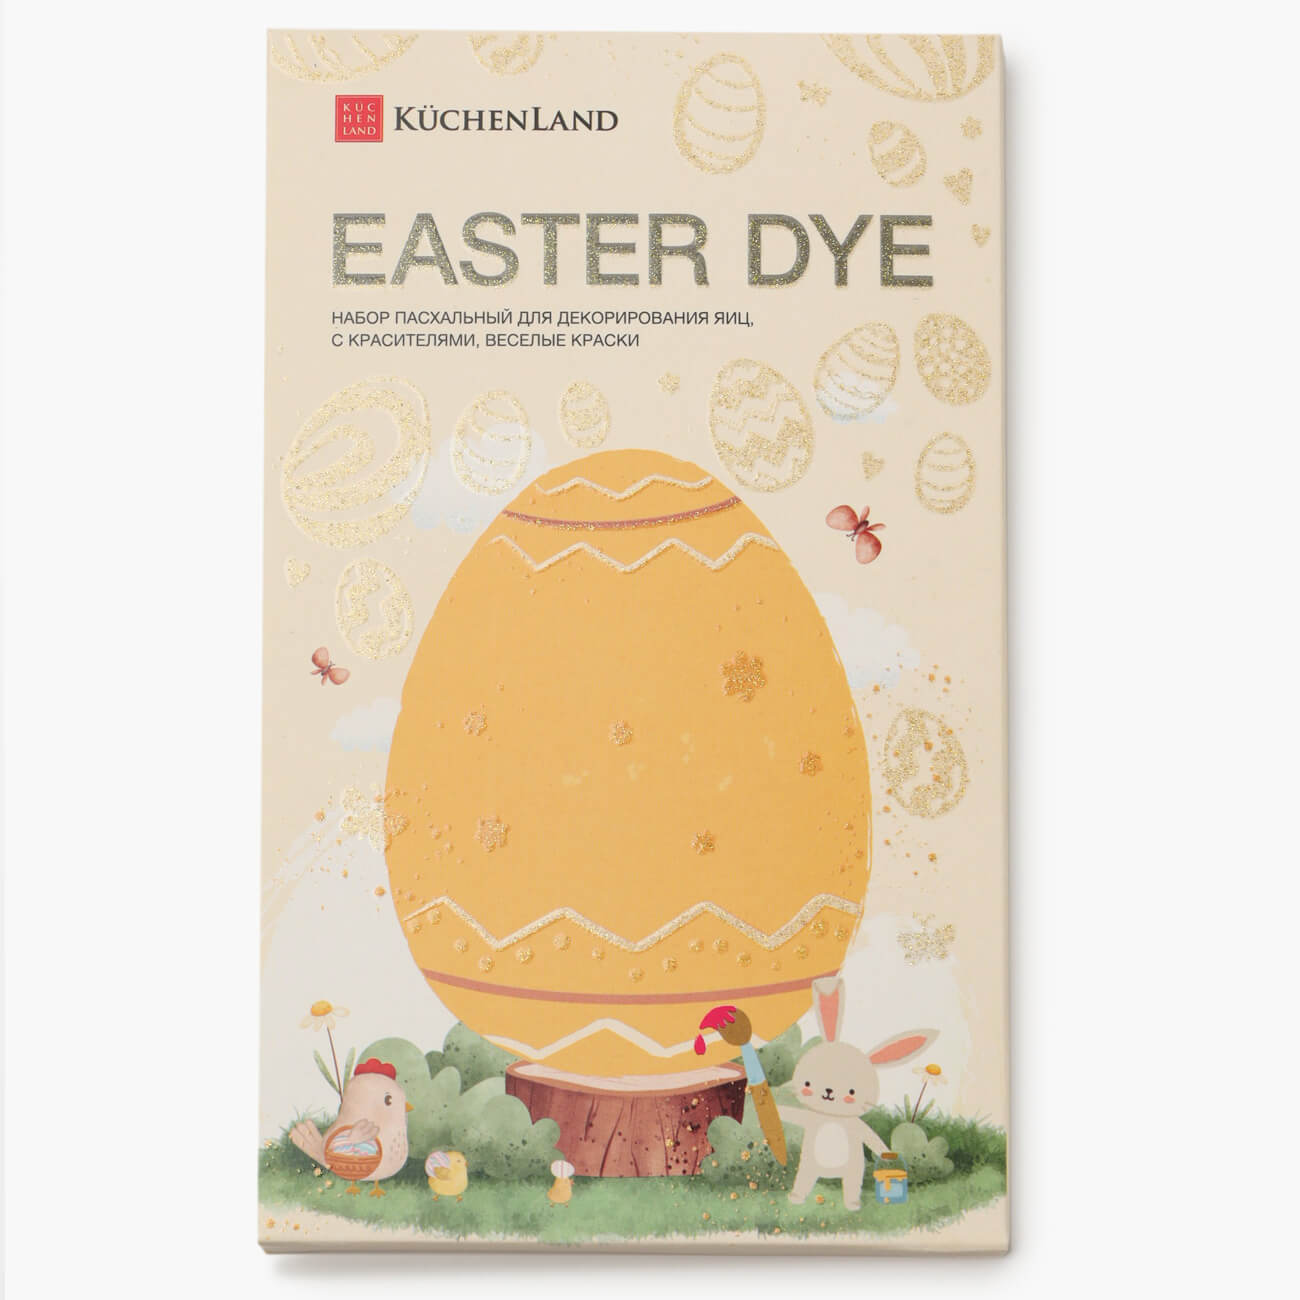 Набор пасхальный для декорирования яиц, 7 цветов/13 пр, Веселые краски, Easter dye набор наклеек для яиц 17х10 см 25 шт пасхальный пвх сказки easter decal